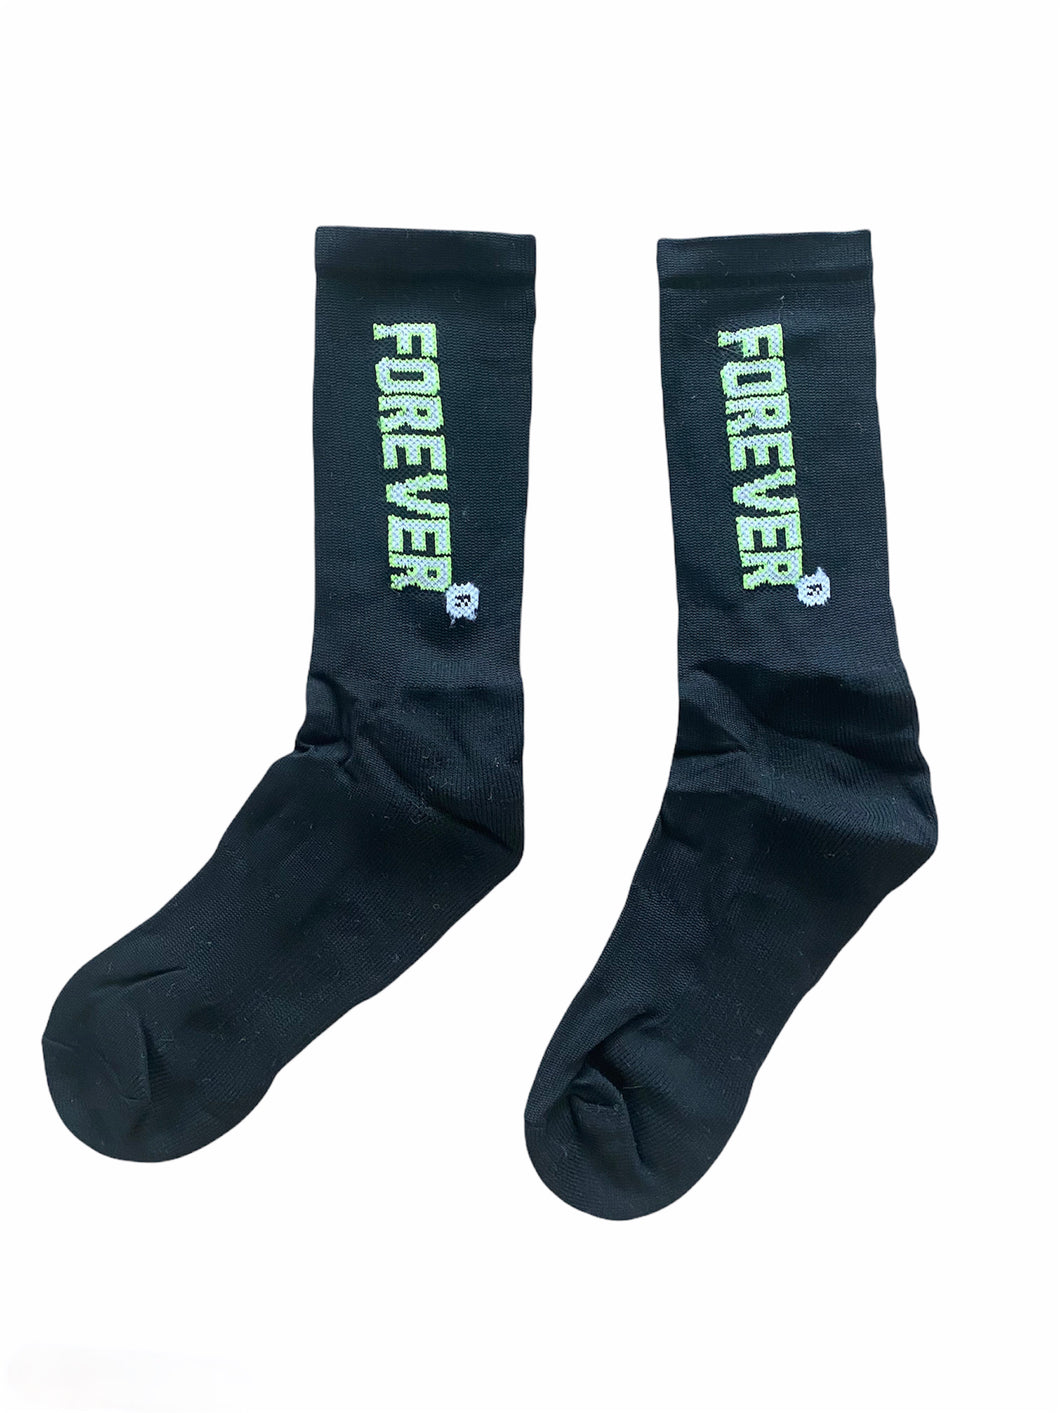 Forever 'Neon' Socks